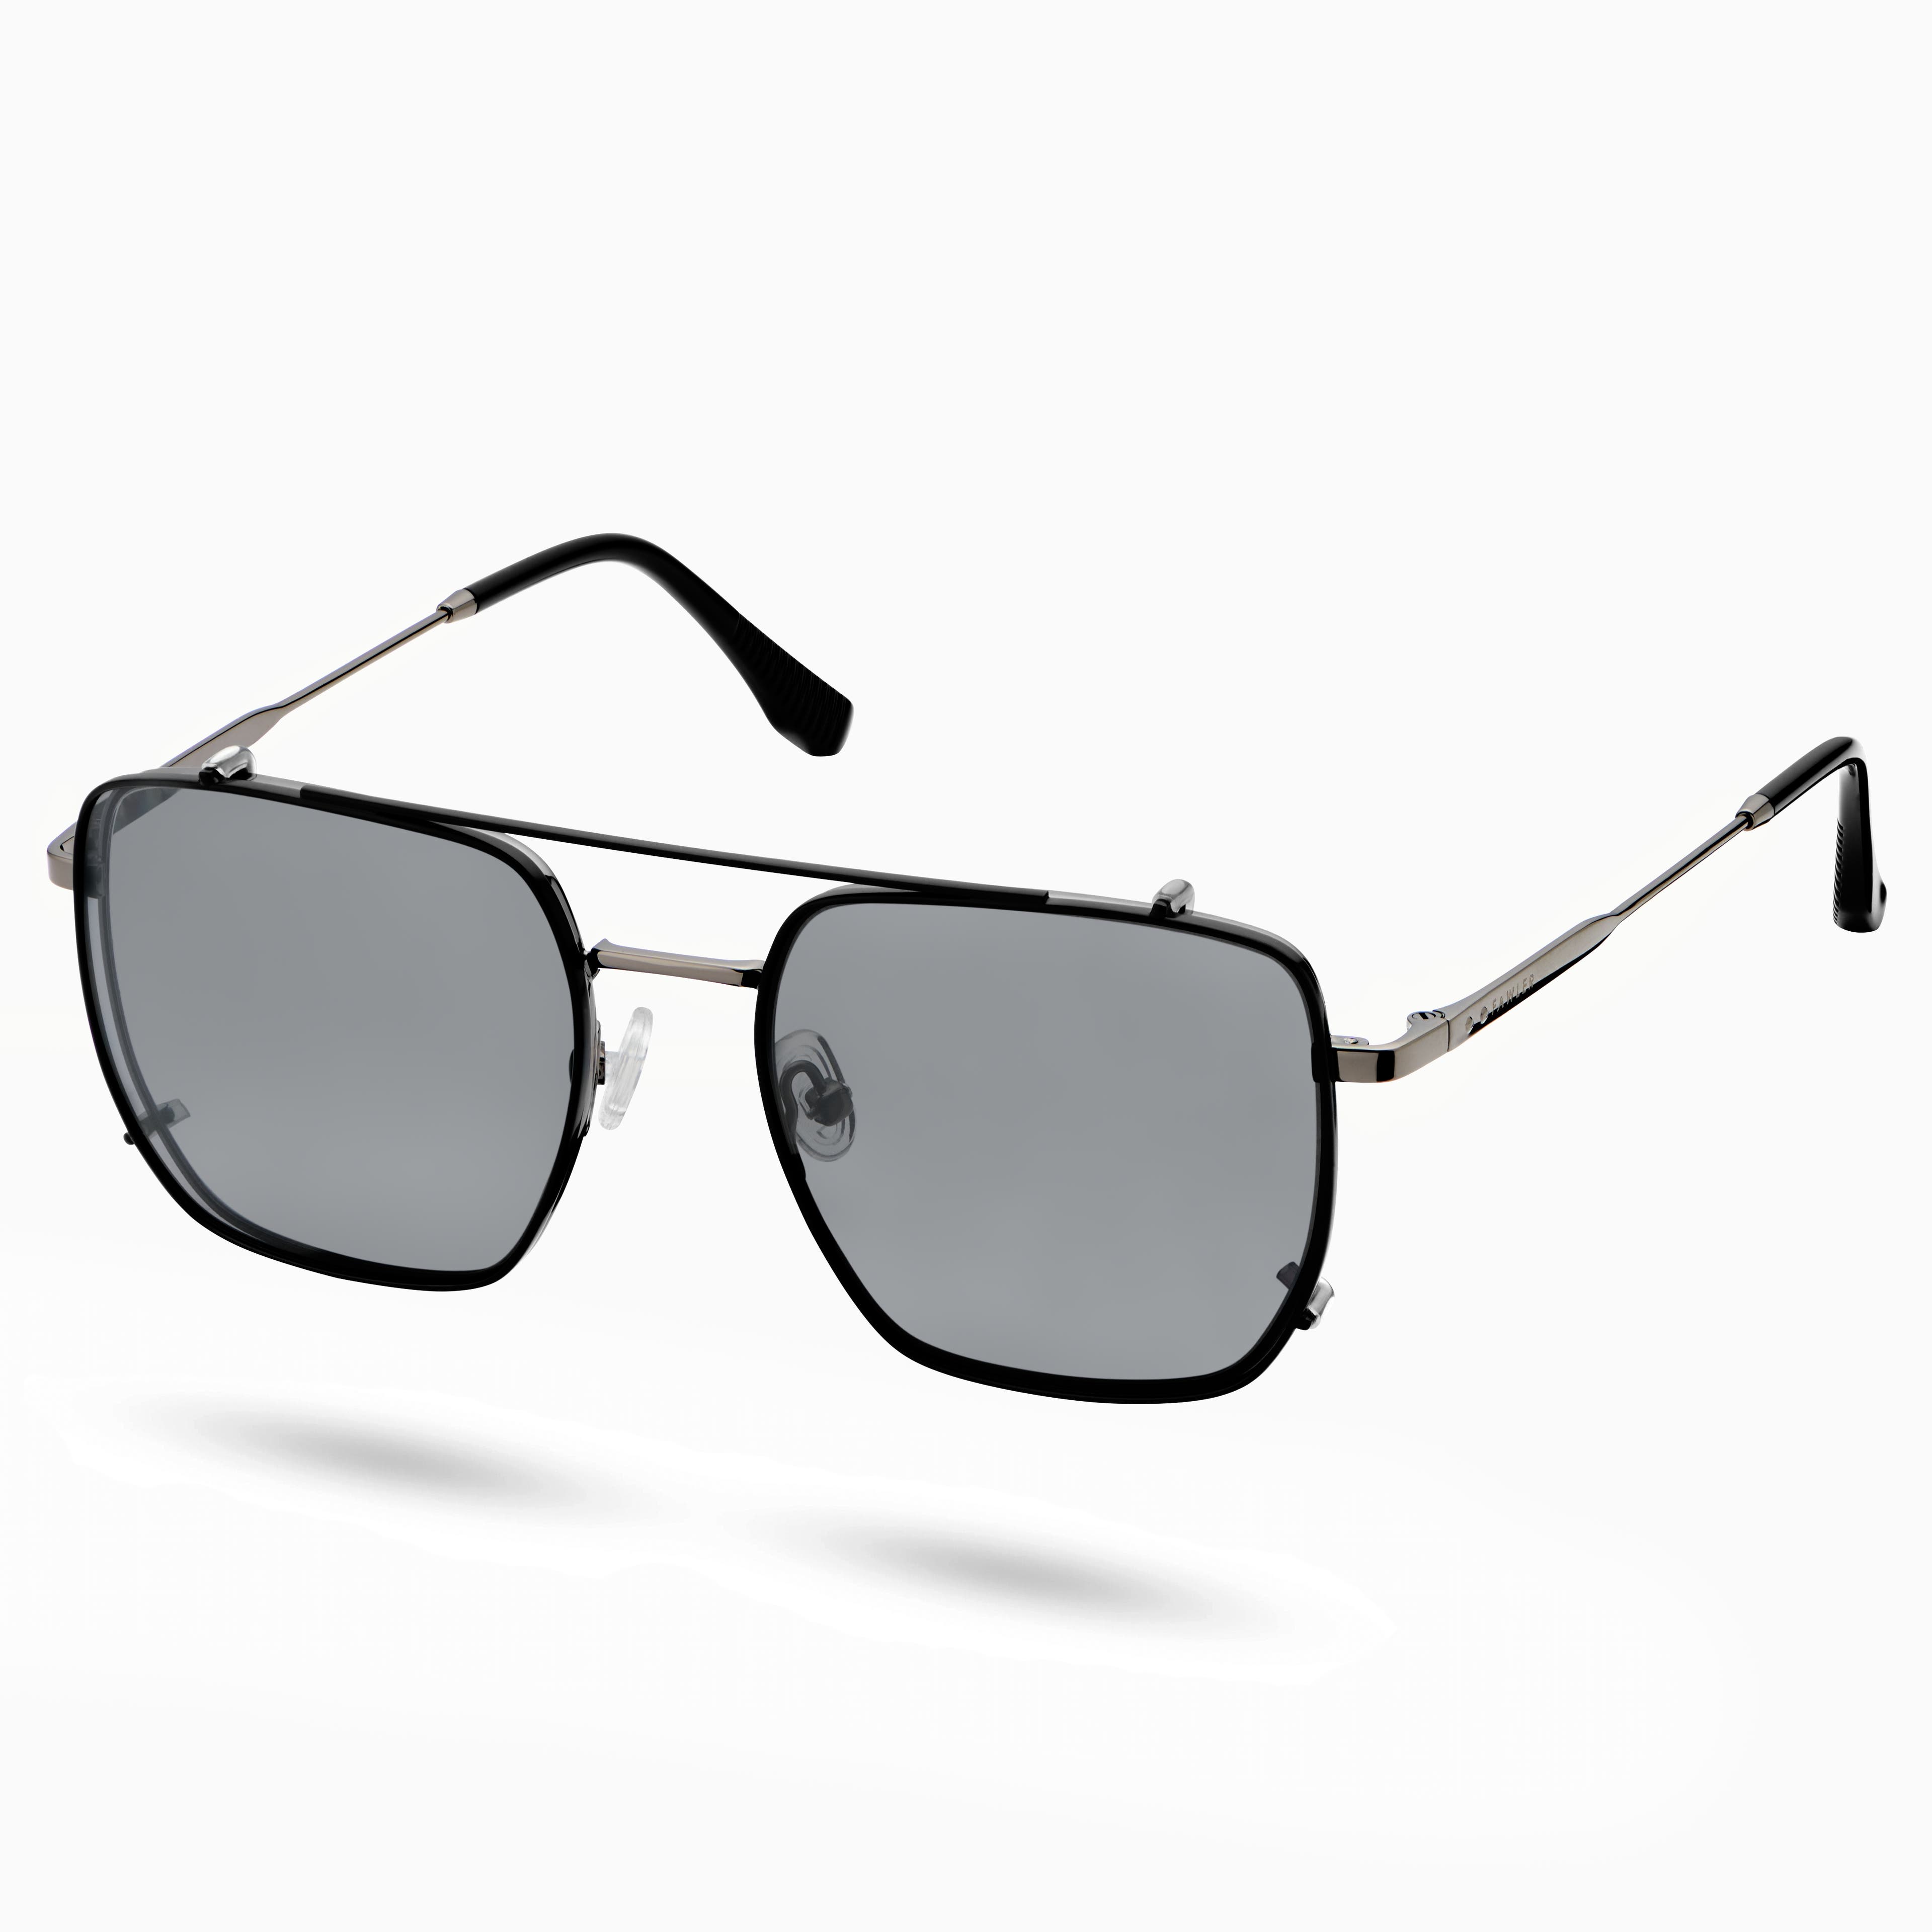 Czarne okulary z przezroczystymi soczewkami blokującymi światło niebieskie i polaryzacyjnymi okularami przeciwsłonecznymi na klips